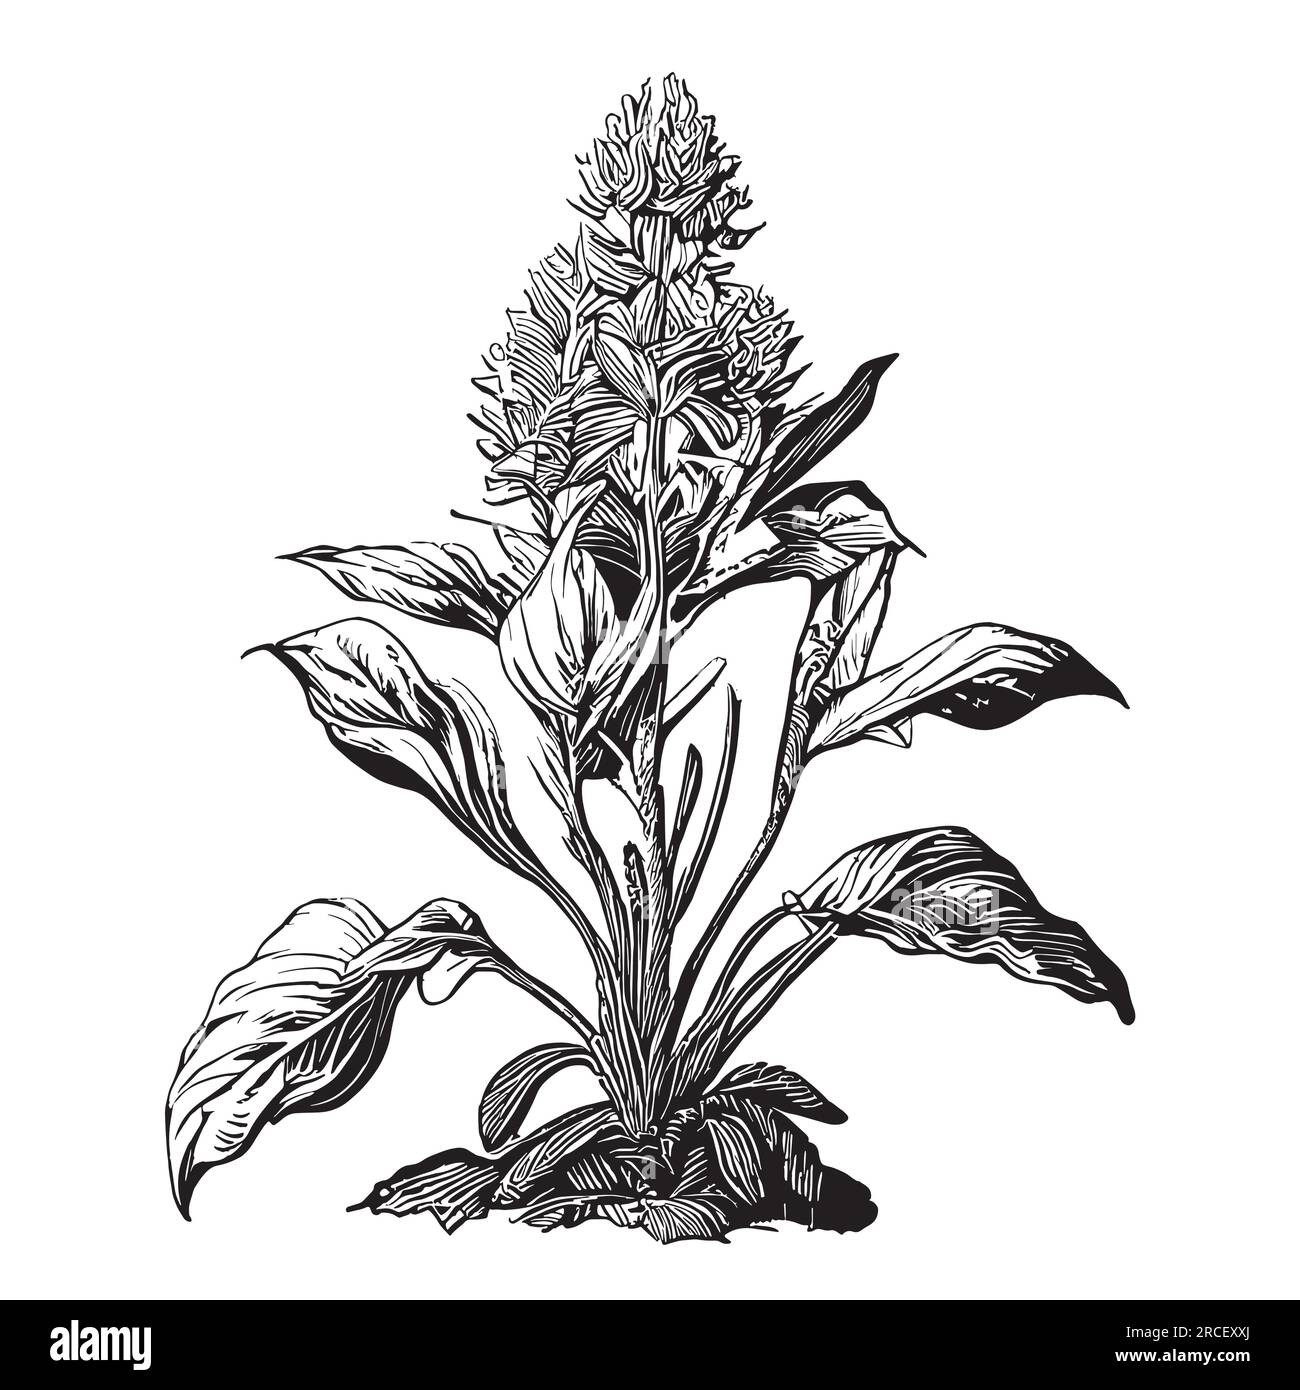 Esquisse de plante de gingembre illustration de croquis dessiné à la main Illustration de Vecteur